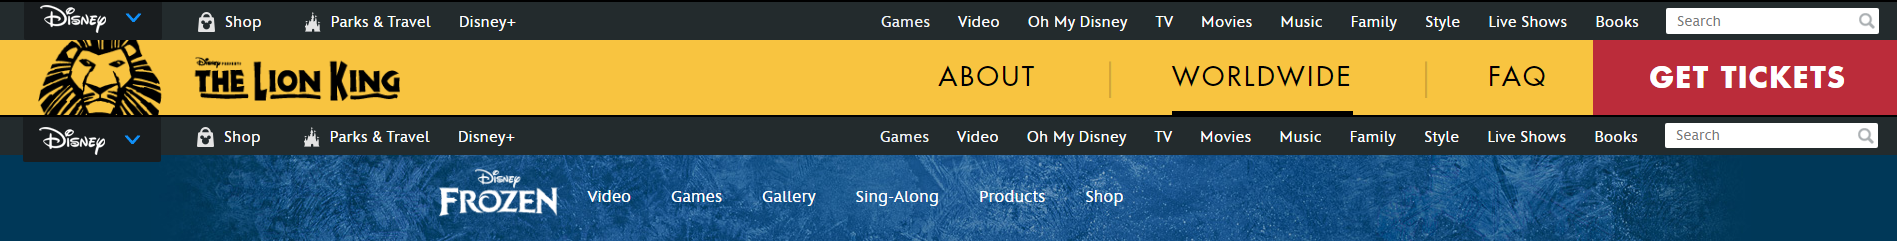 Universal website navigation on Disney's websites